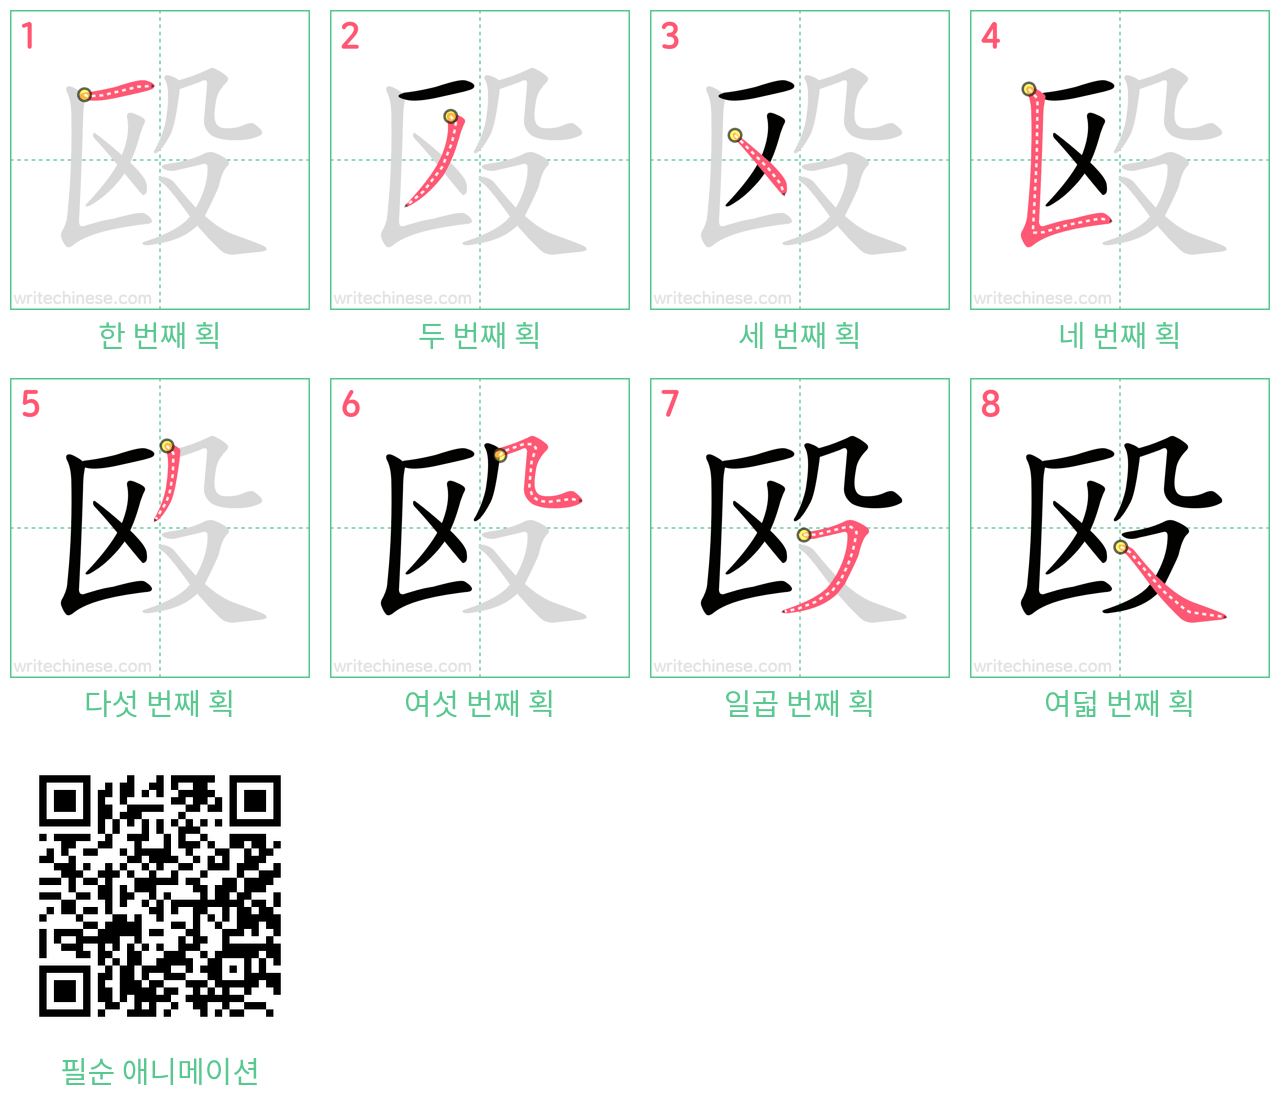 殴 step-by-step stroke order diagrams